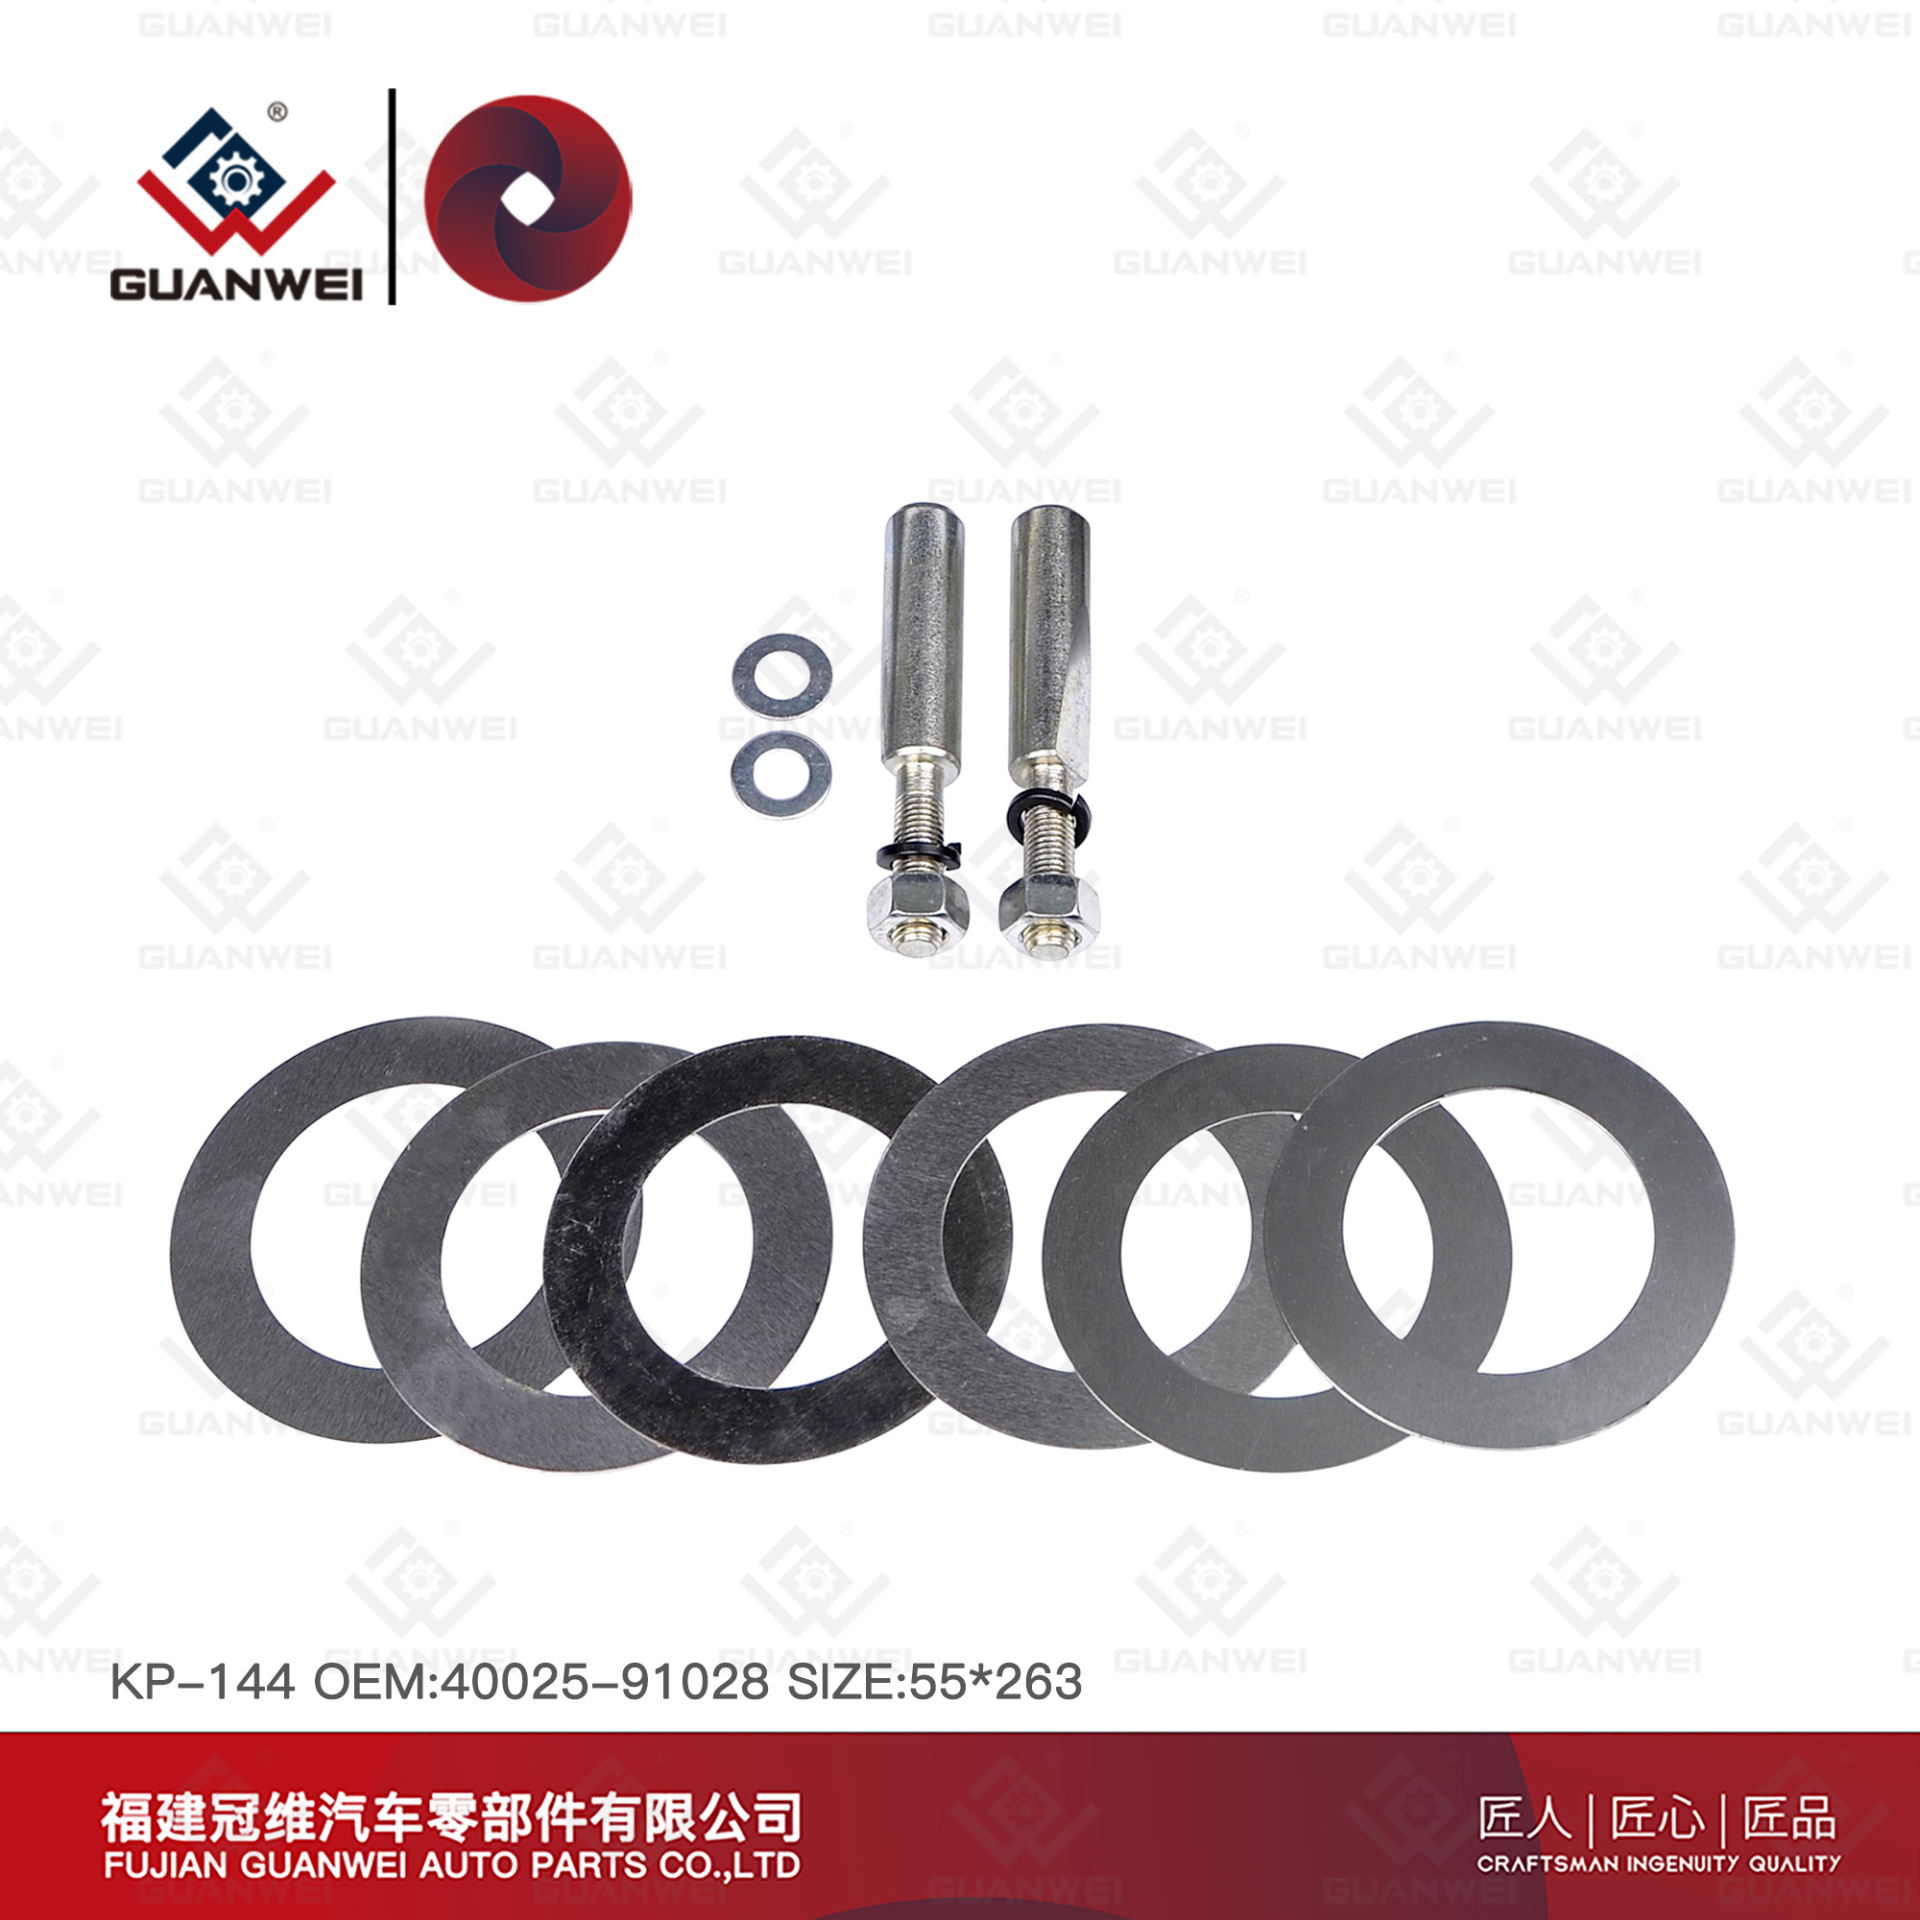 king pin kit KP-144  OEM:40025-91028 Material:45# steel